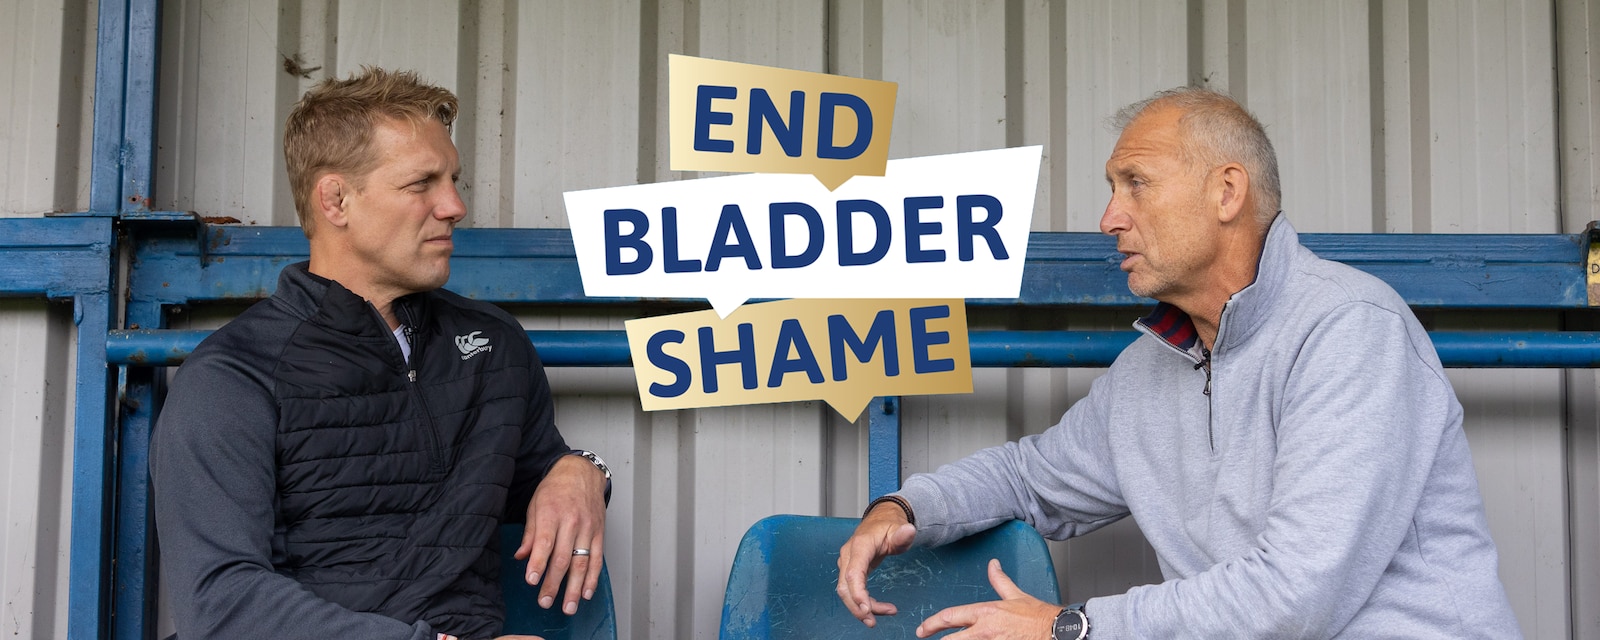 Lewis Moody End Bladder Shame Web Page Banner.png                                                                                                                                                                                                                                                                                                                                                                                                                                                                   